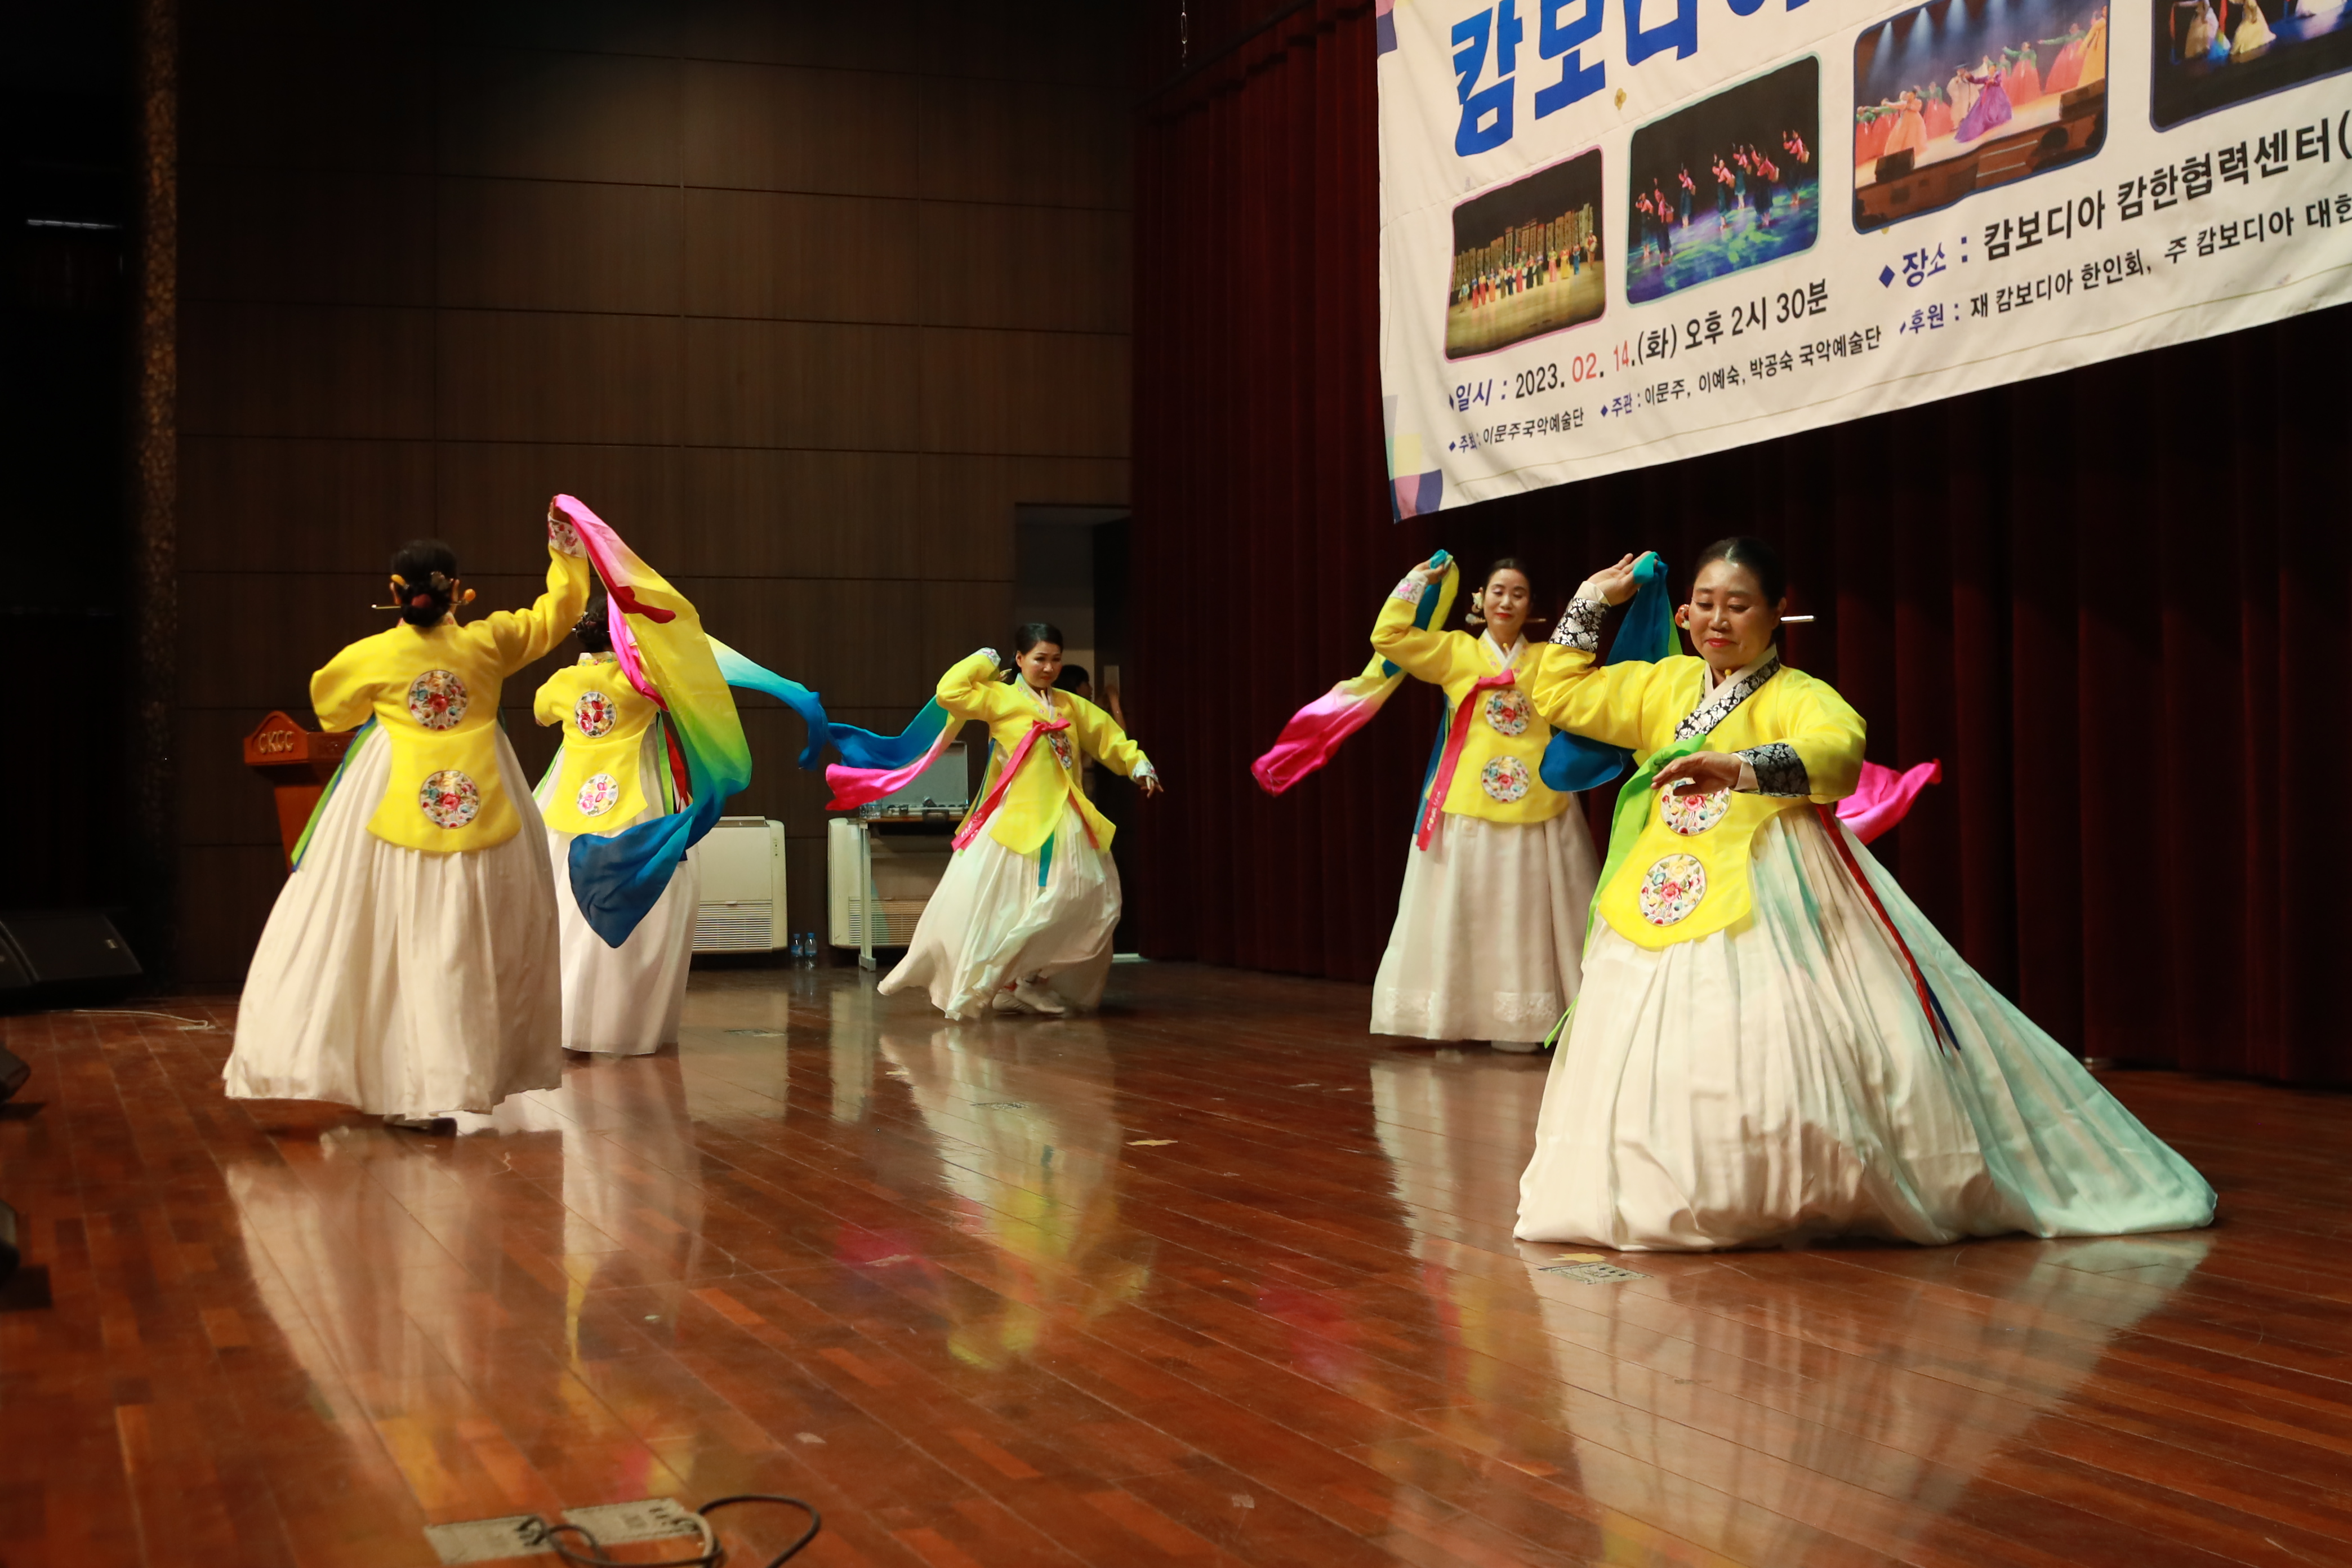 < 이문주 국악예술단의 공연, 아리랑을 전통무용으로 연출한 작품 - 출처: 통신원 촬영 >